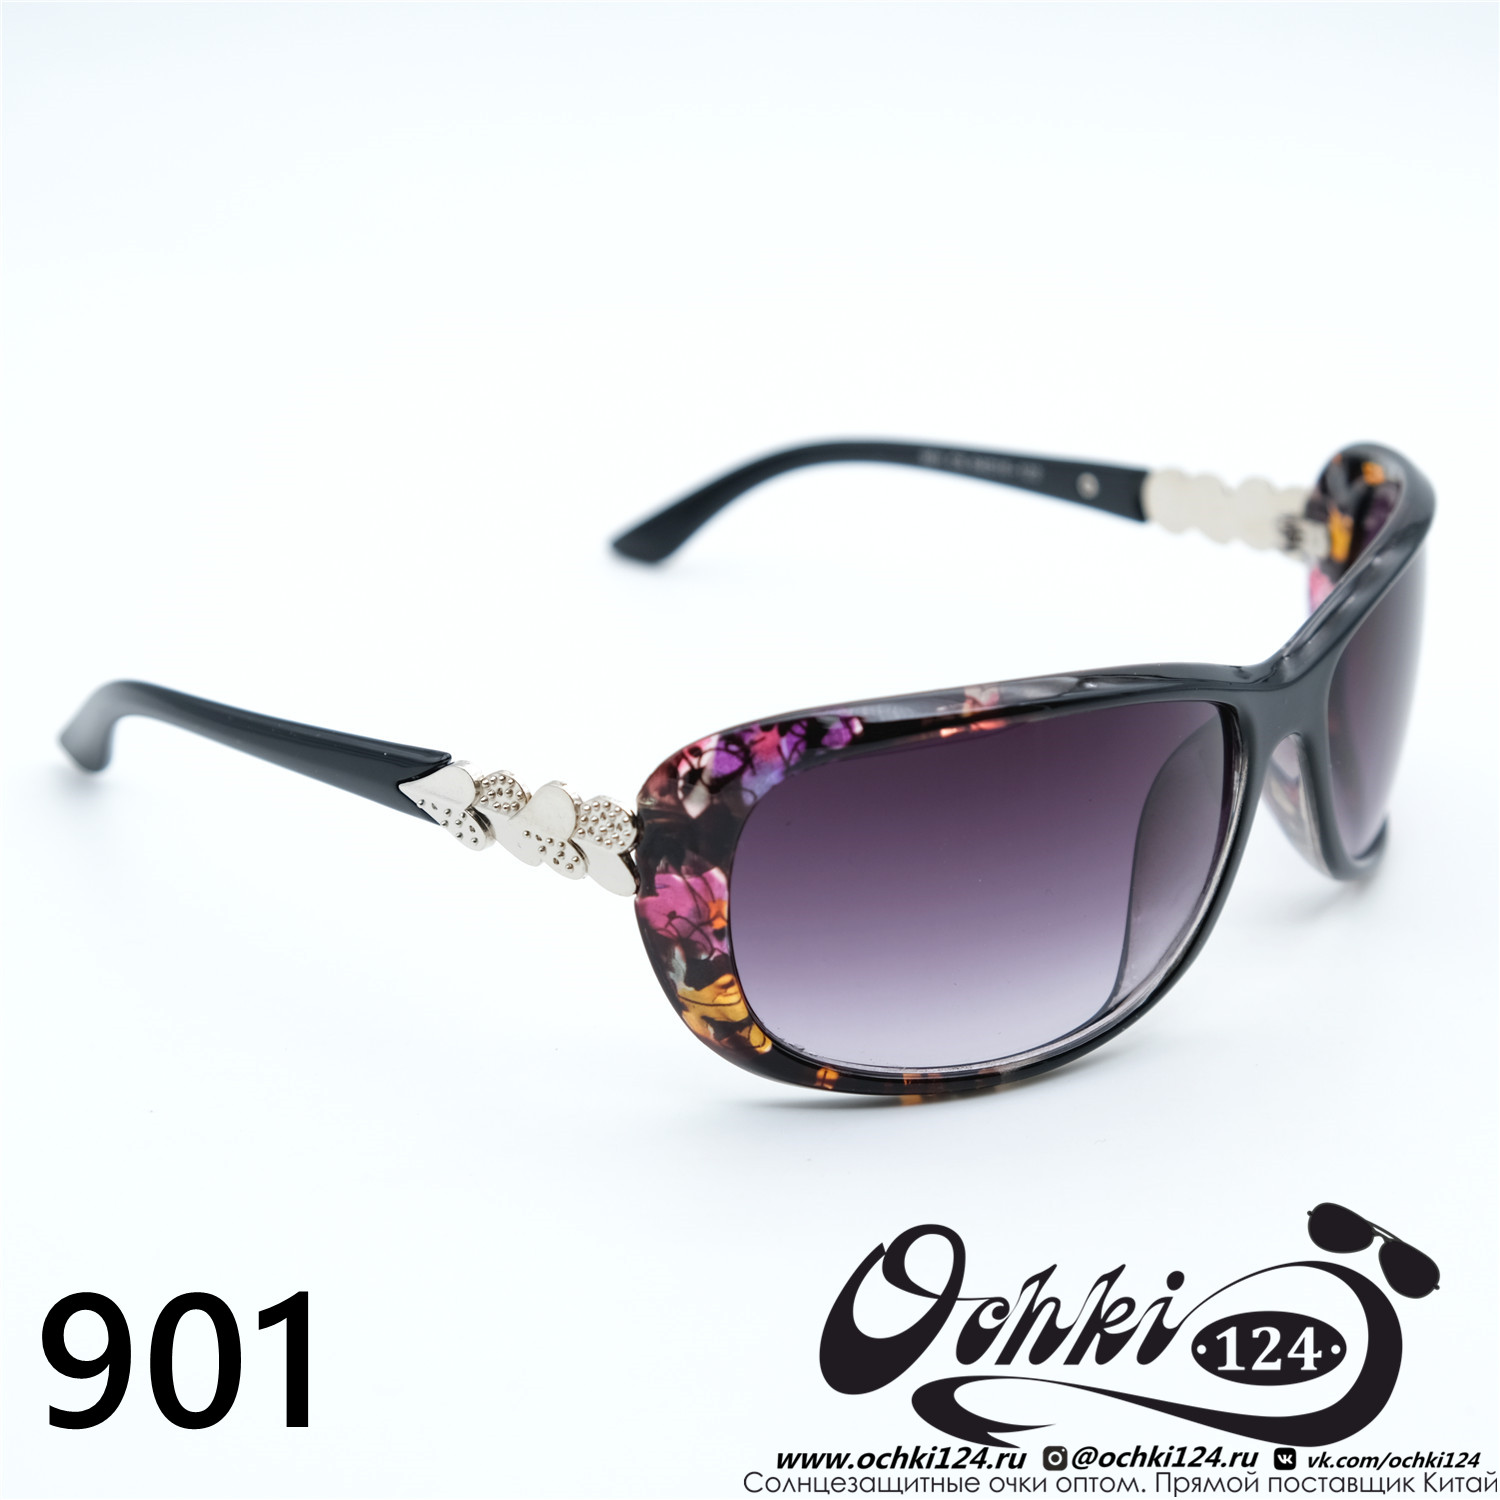  Солнцезащитные очки картинка Женские Prius  Стандартные 901-C5 